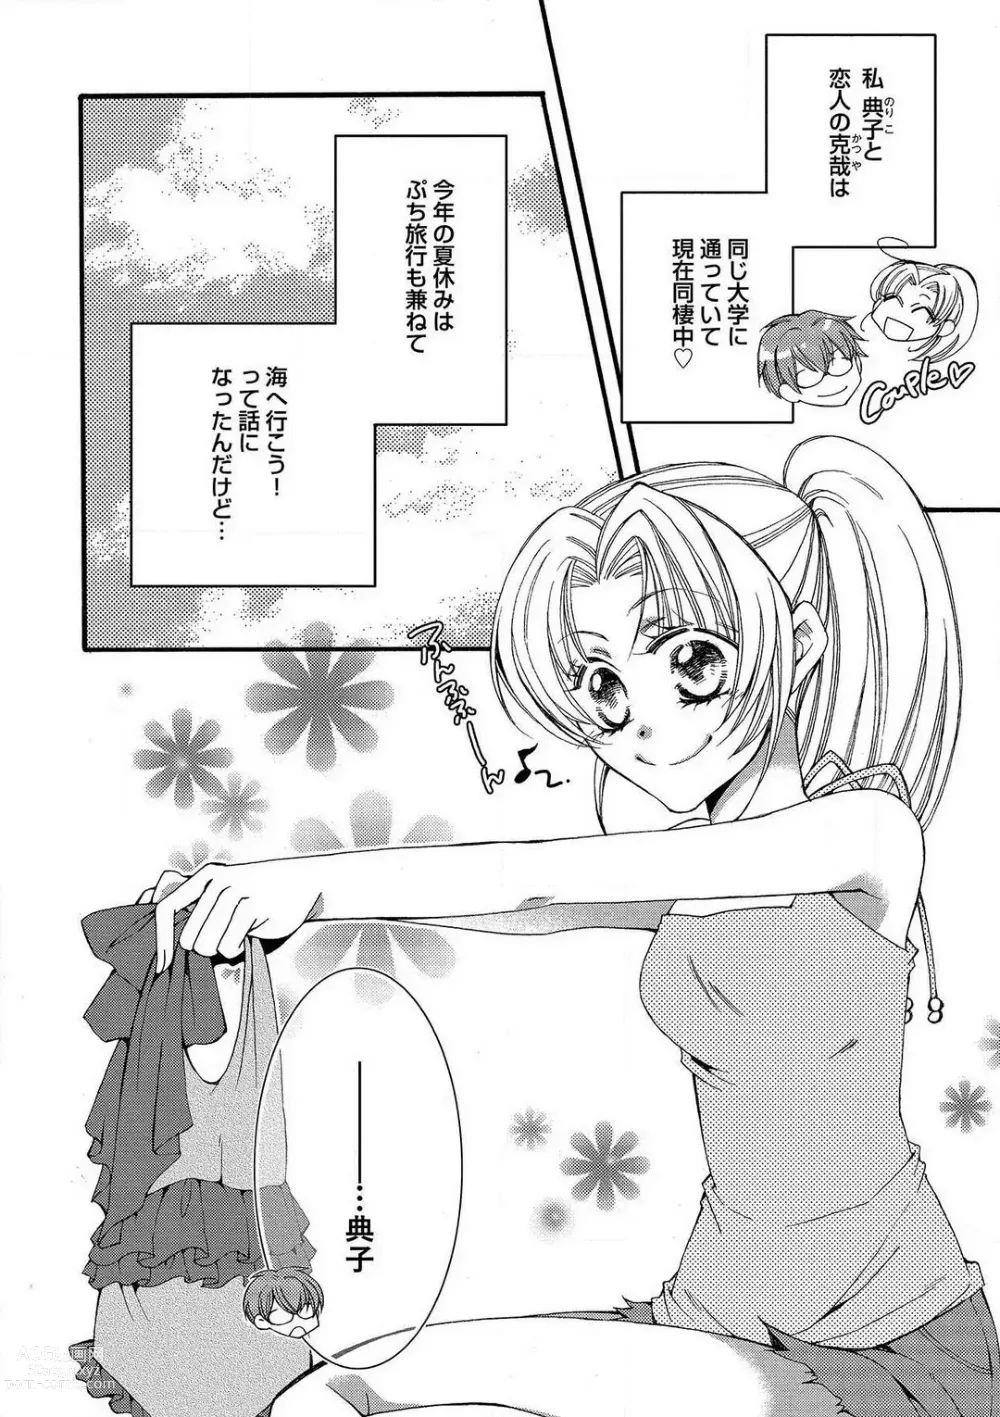 Page 58 of manga LOVE×PLAY 1-4